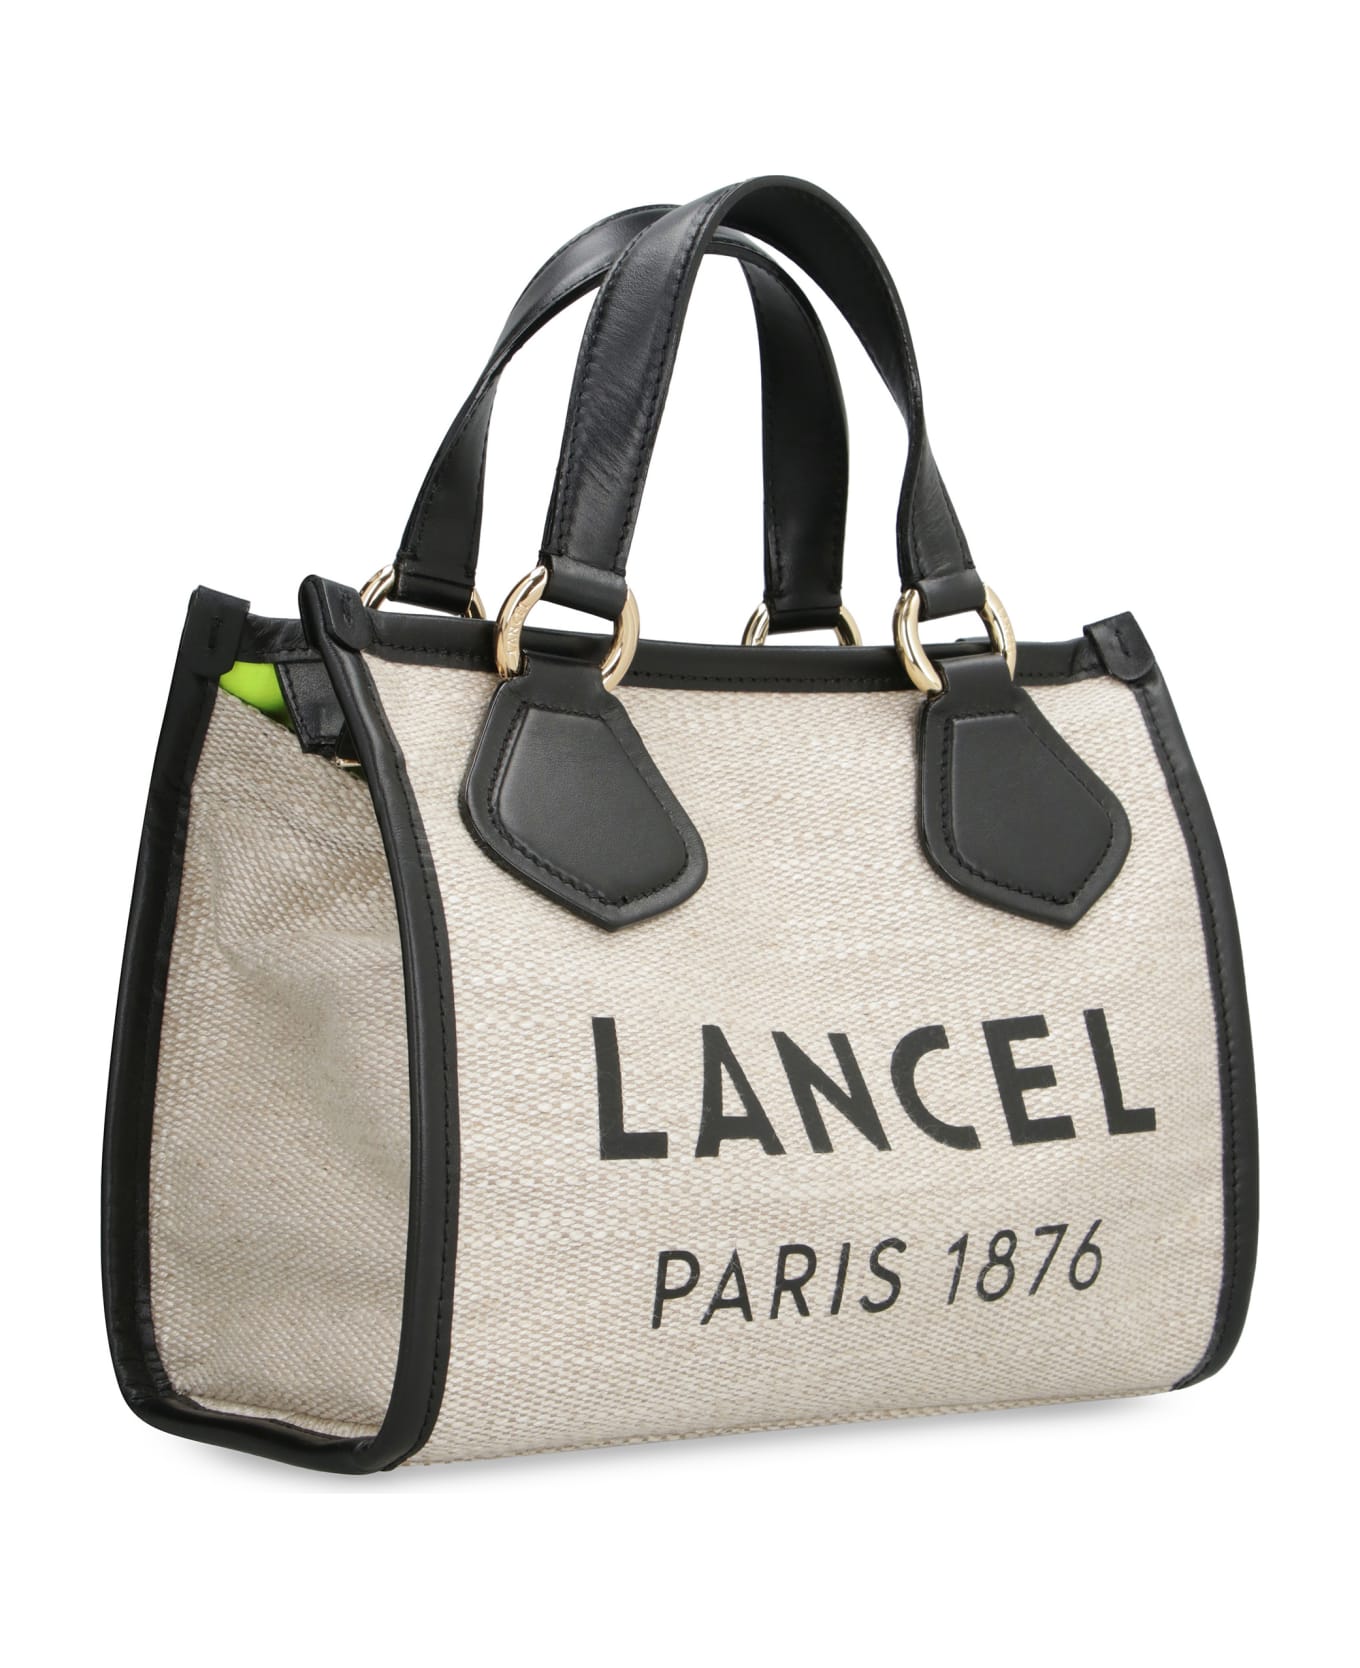 Lancel Summer Tote Bag - A Natural Black